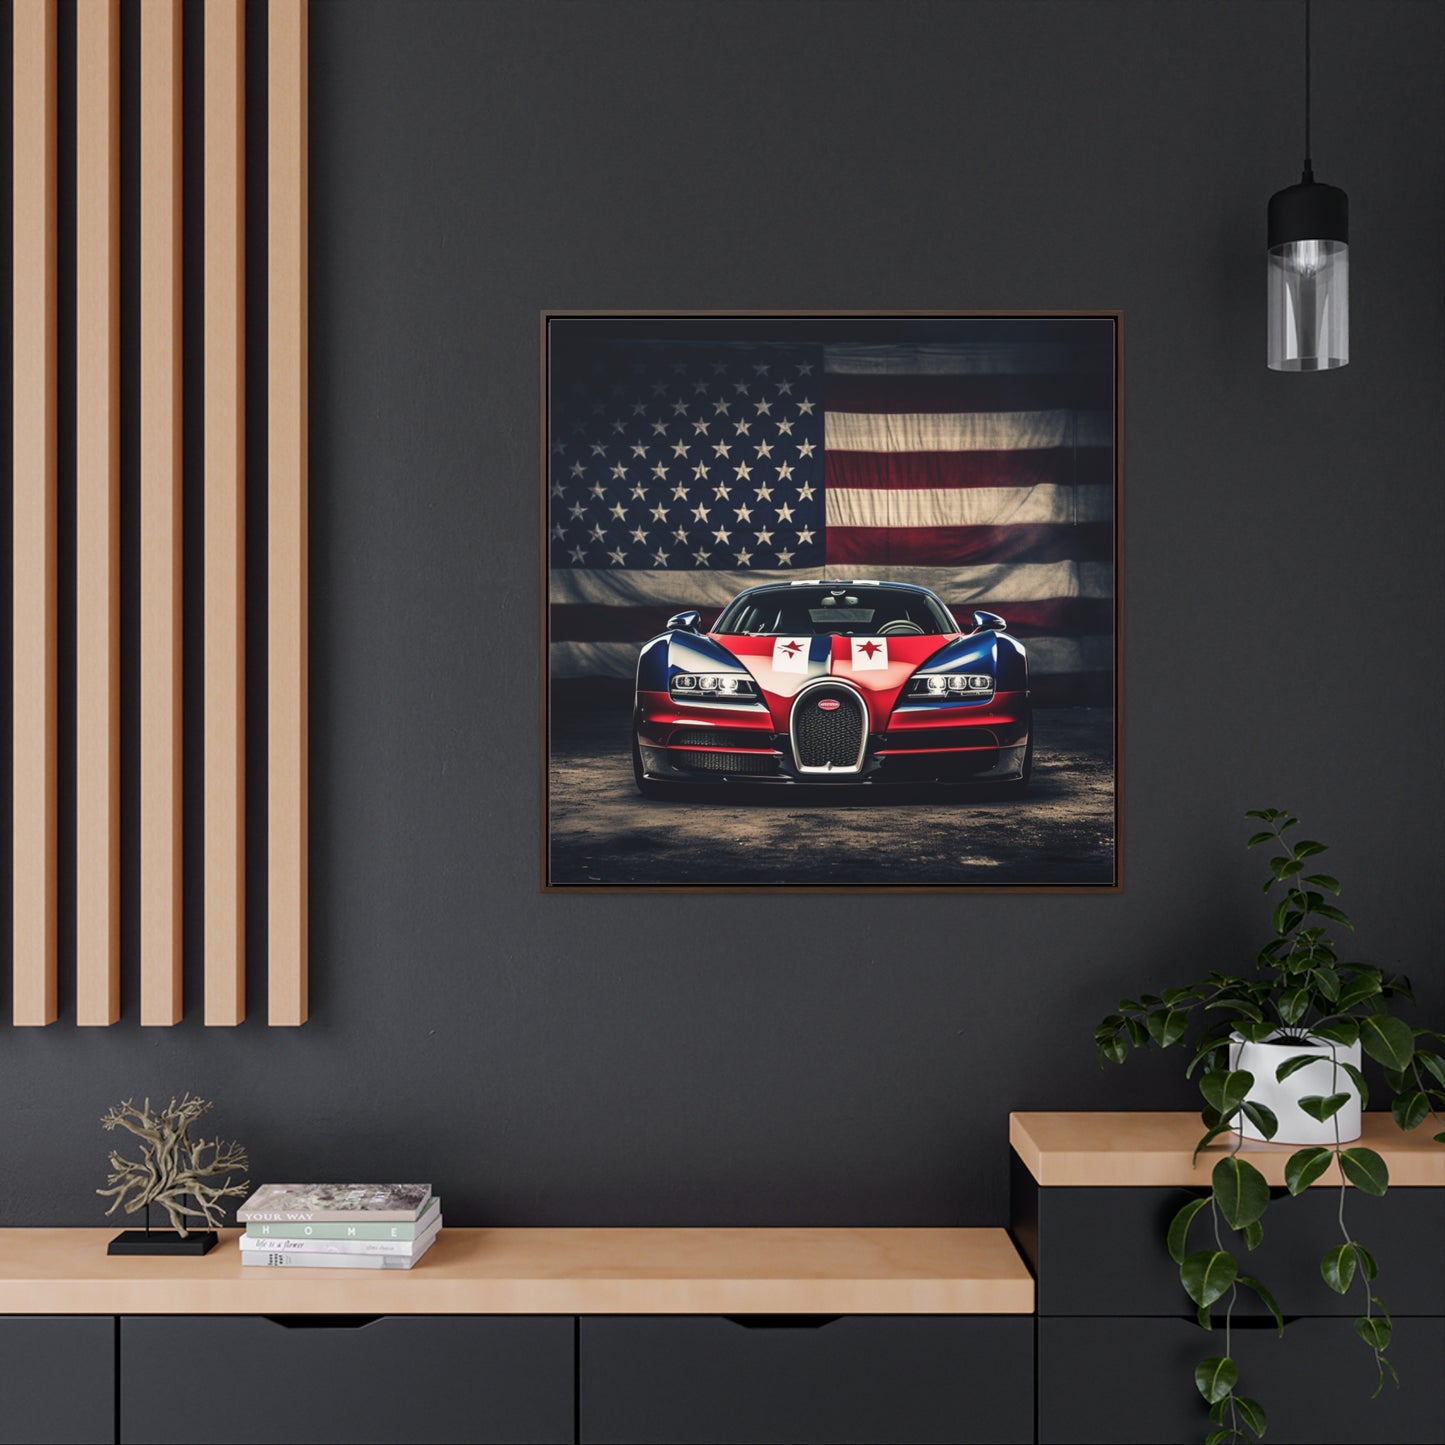 Gallery Canvas Wraps, Square Frame Bugatti American Flag 3